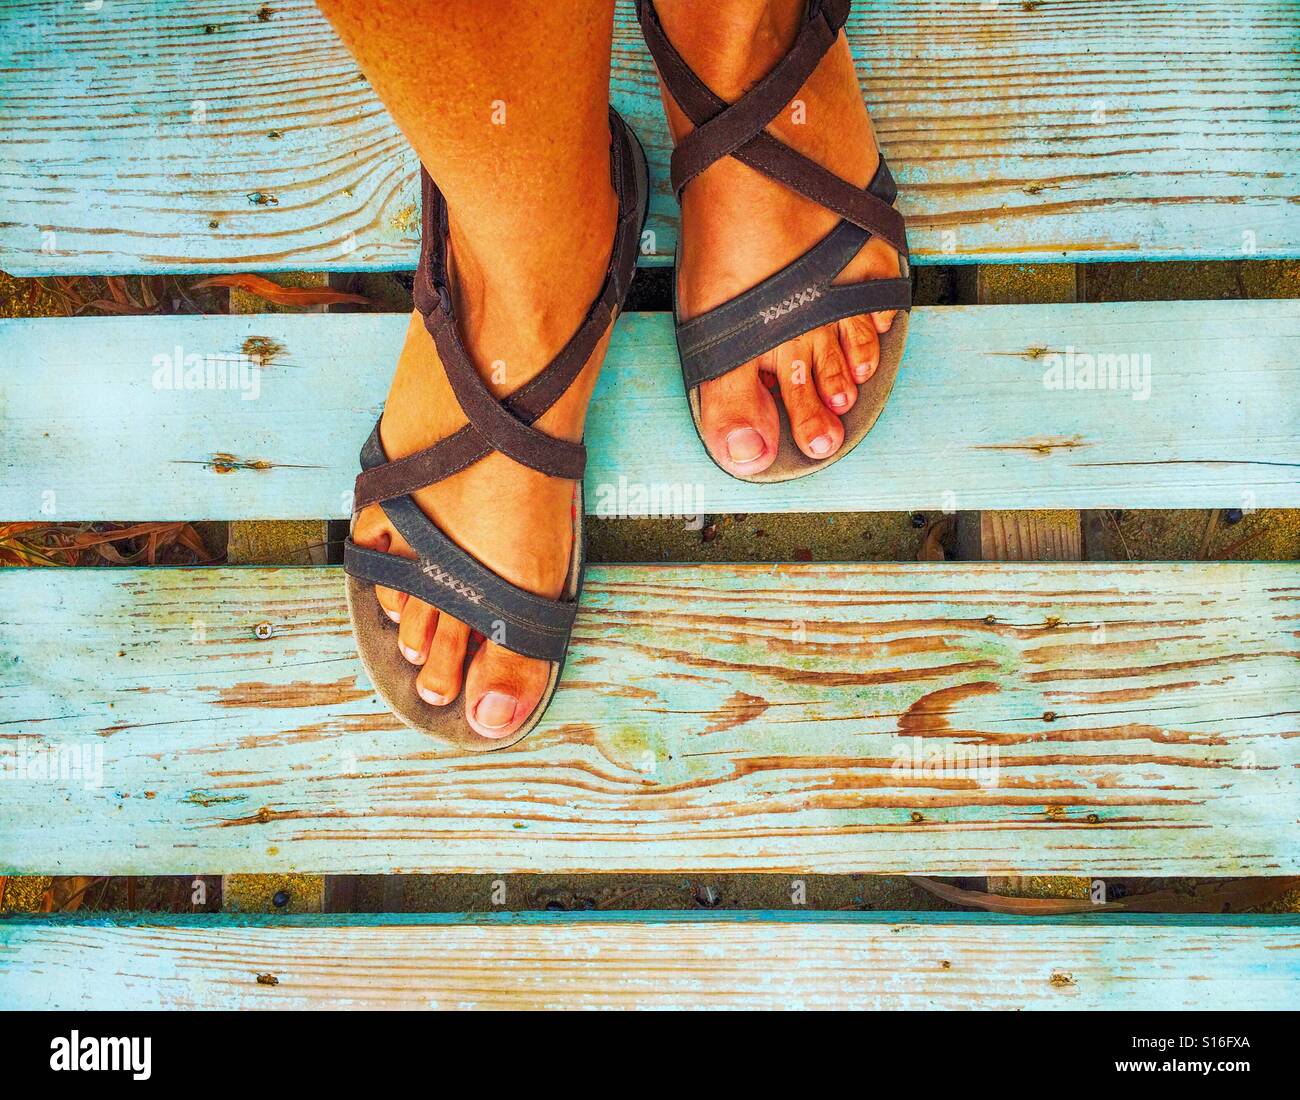 Pieds en sandales femme debout sur planches en bois bleu Banque D'Images